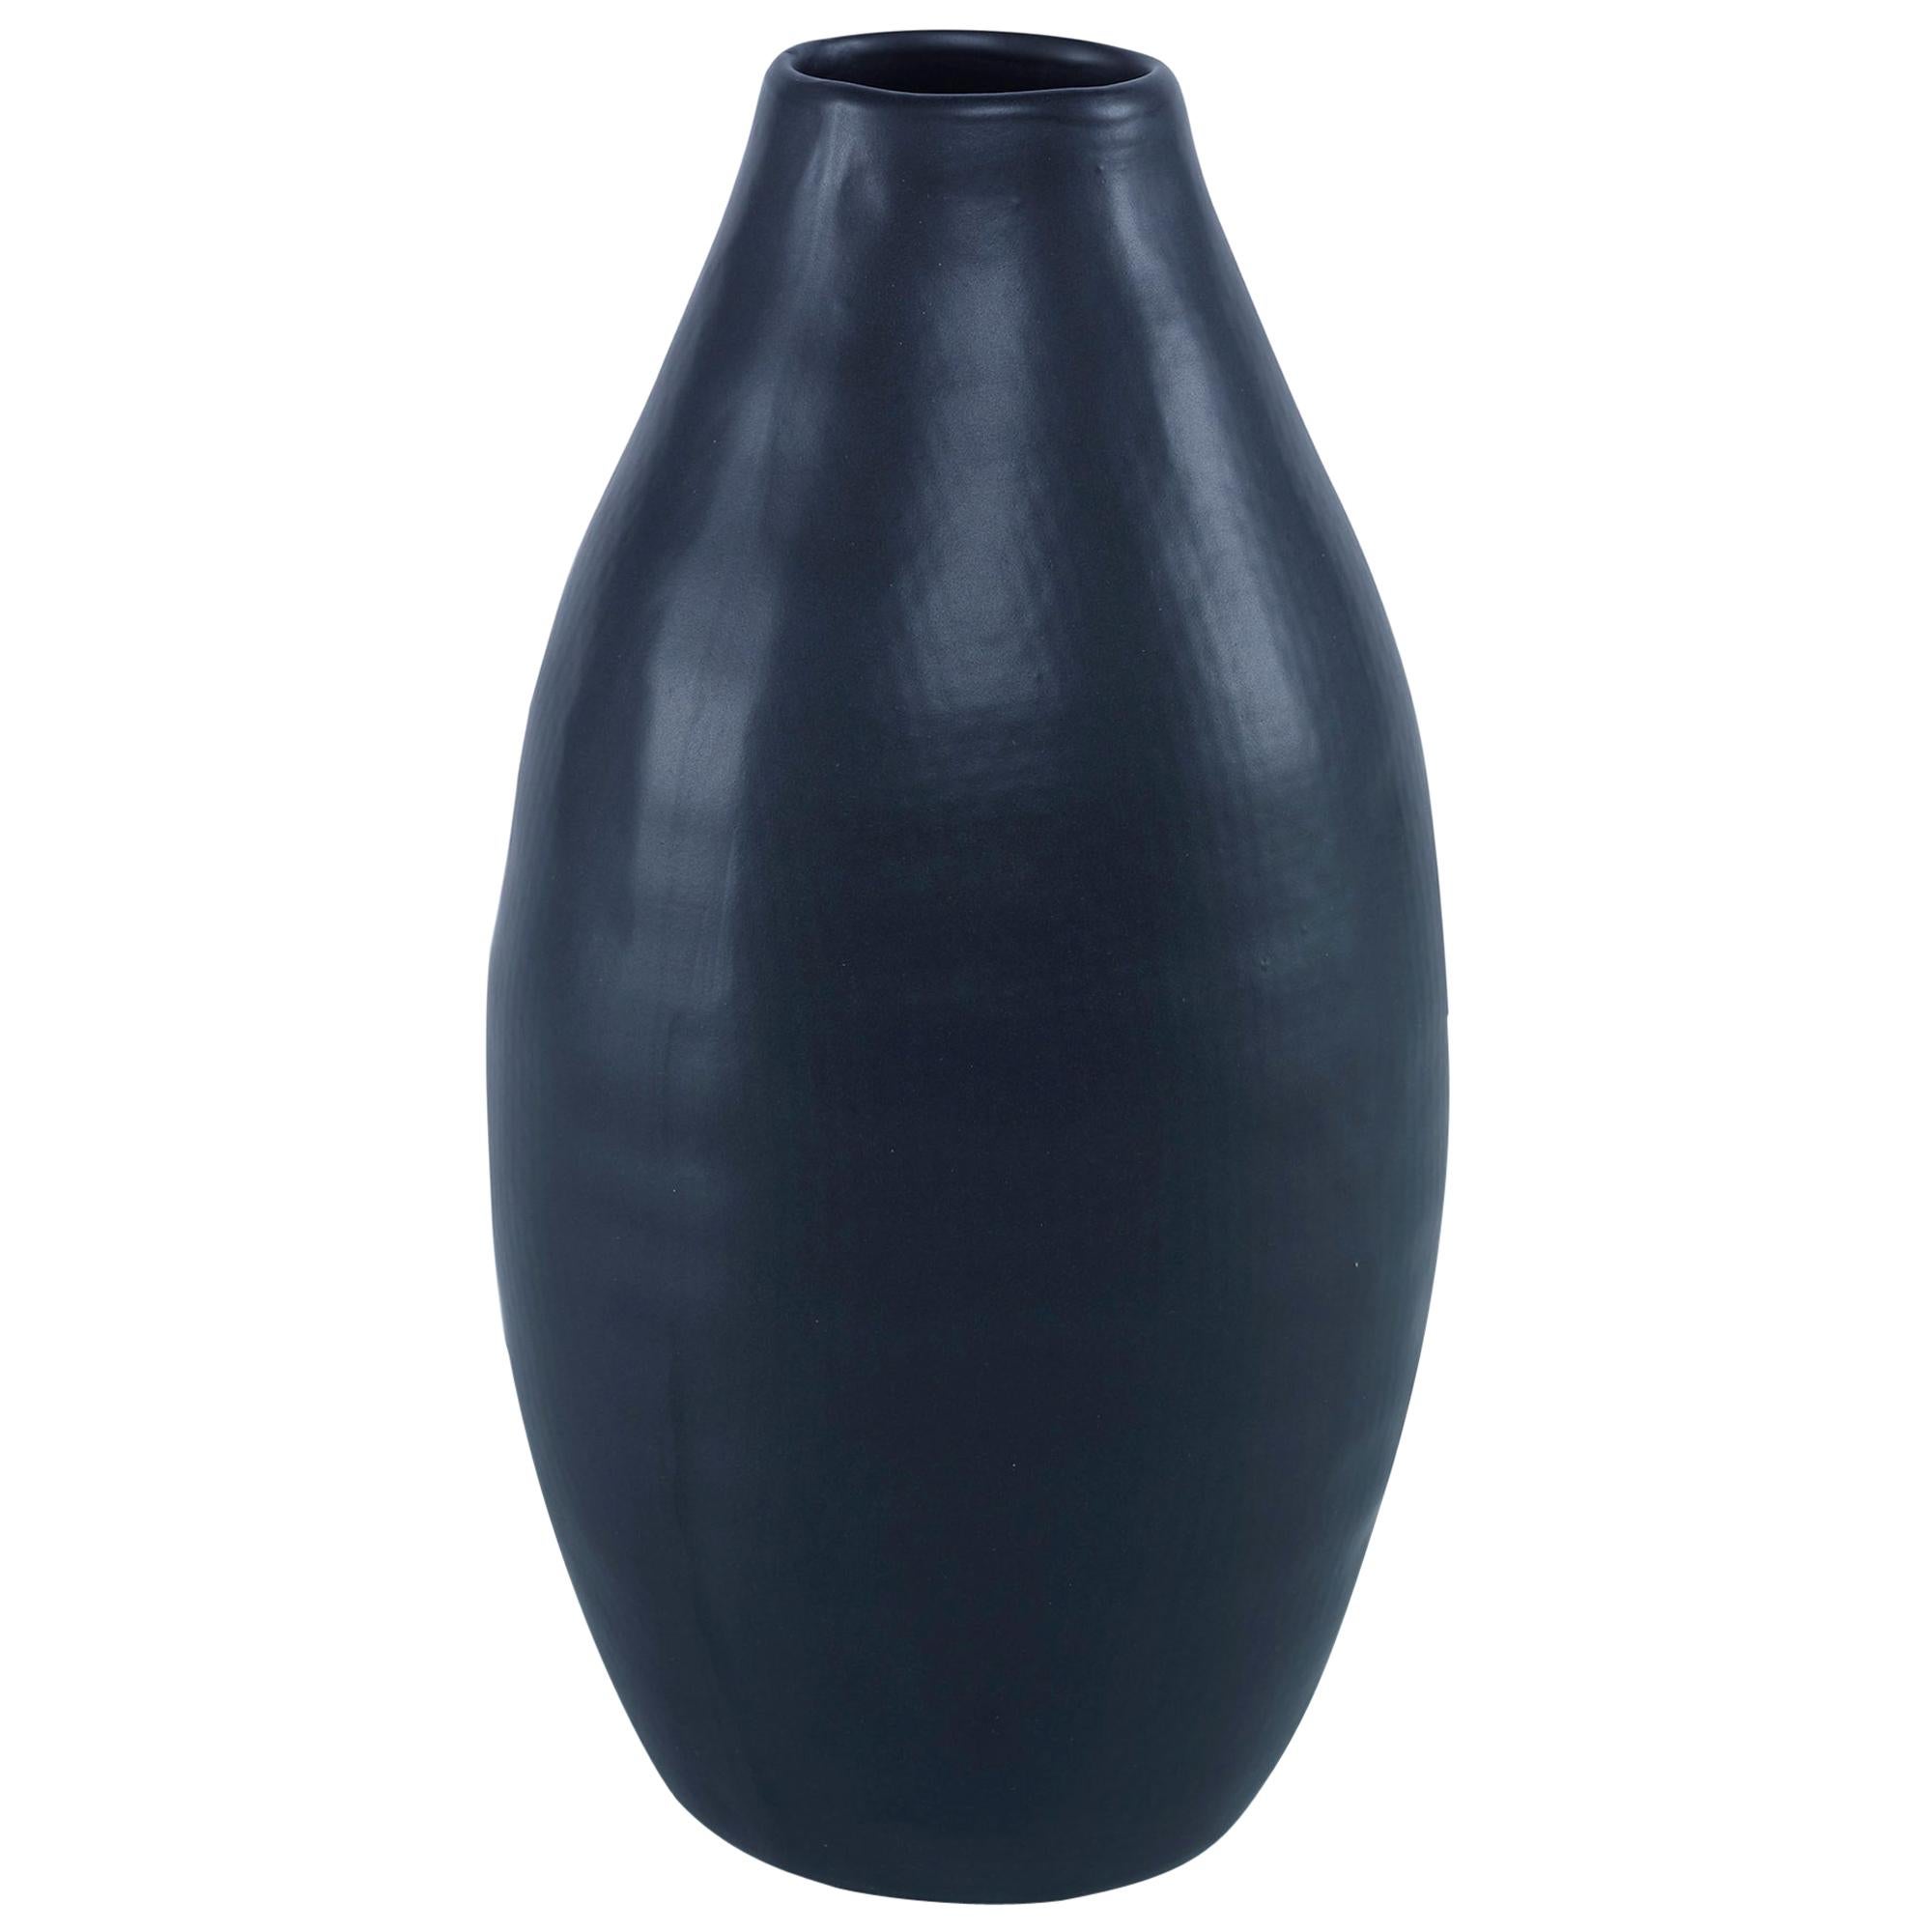 Nova Small Vase in Black Ceramic by CuratedKravet